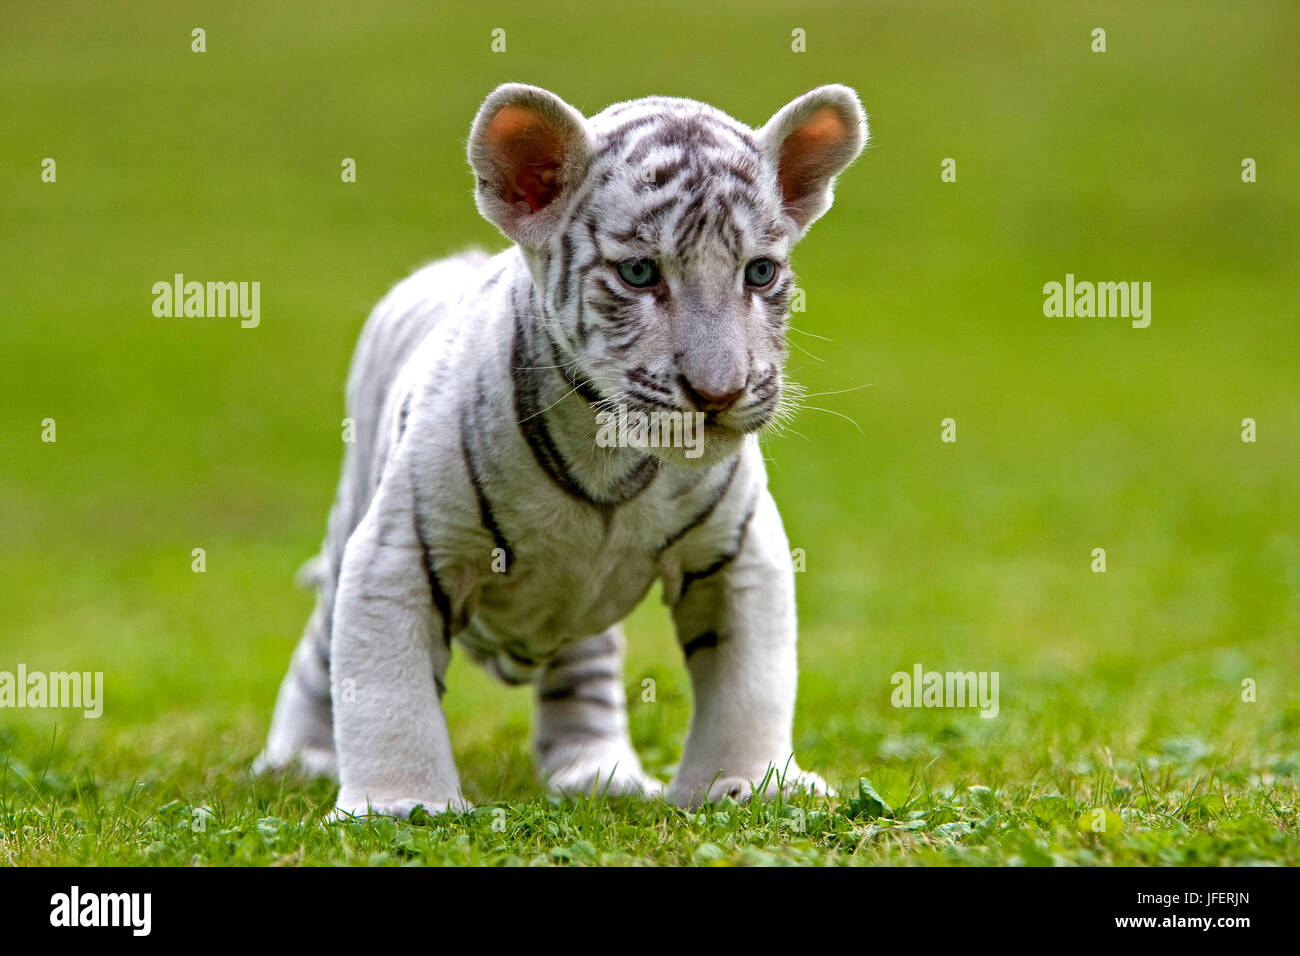 White Tiger, panthera tigris, Cub Stock Photo